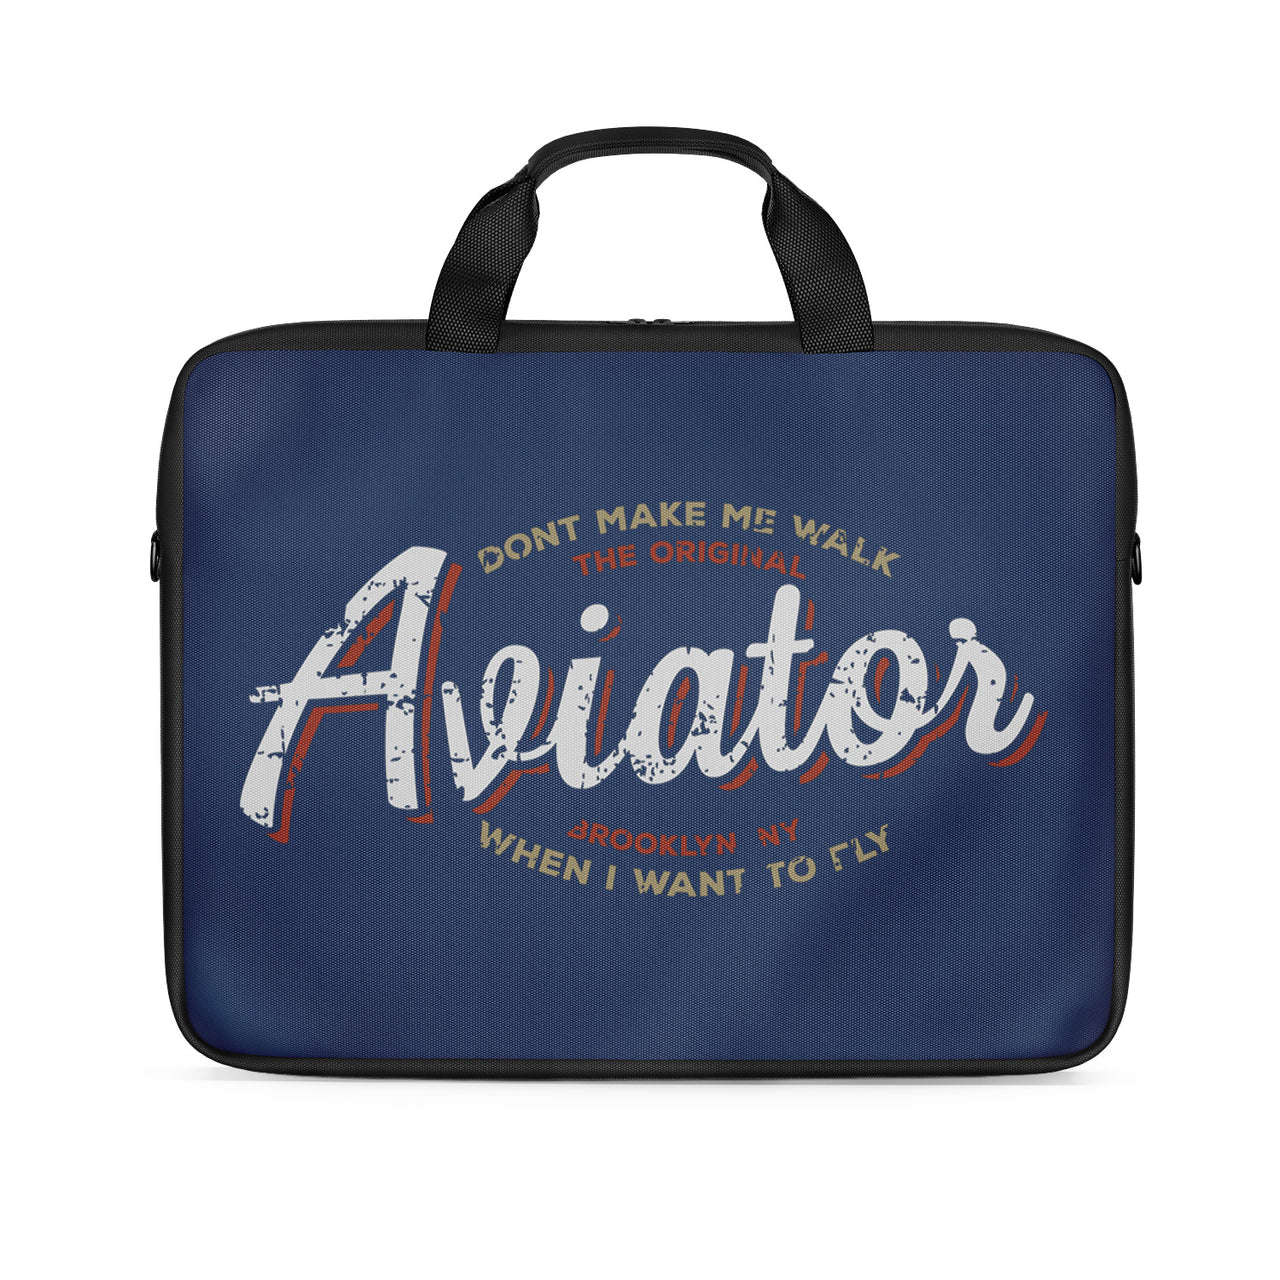 Aviator - Dont Make Me Walk Designed Laptop & Tablet Bags